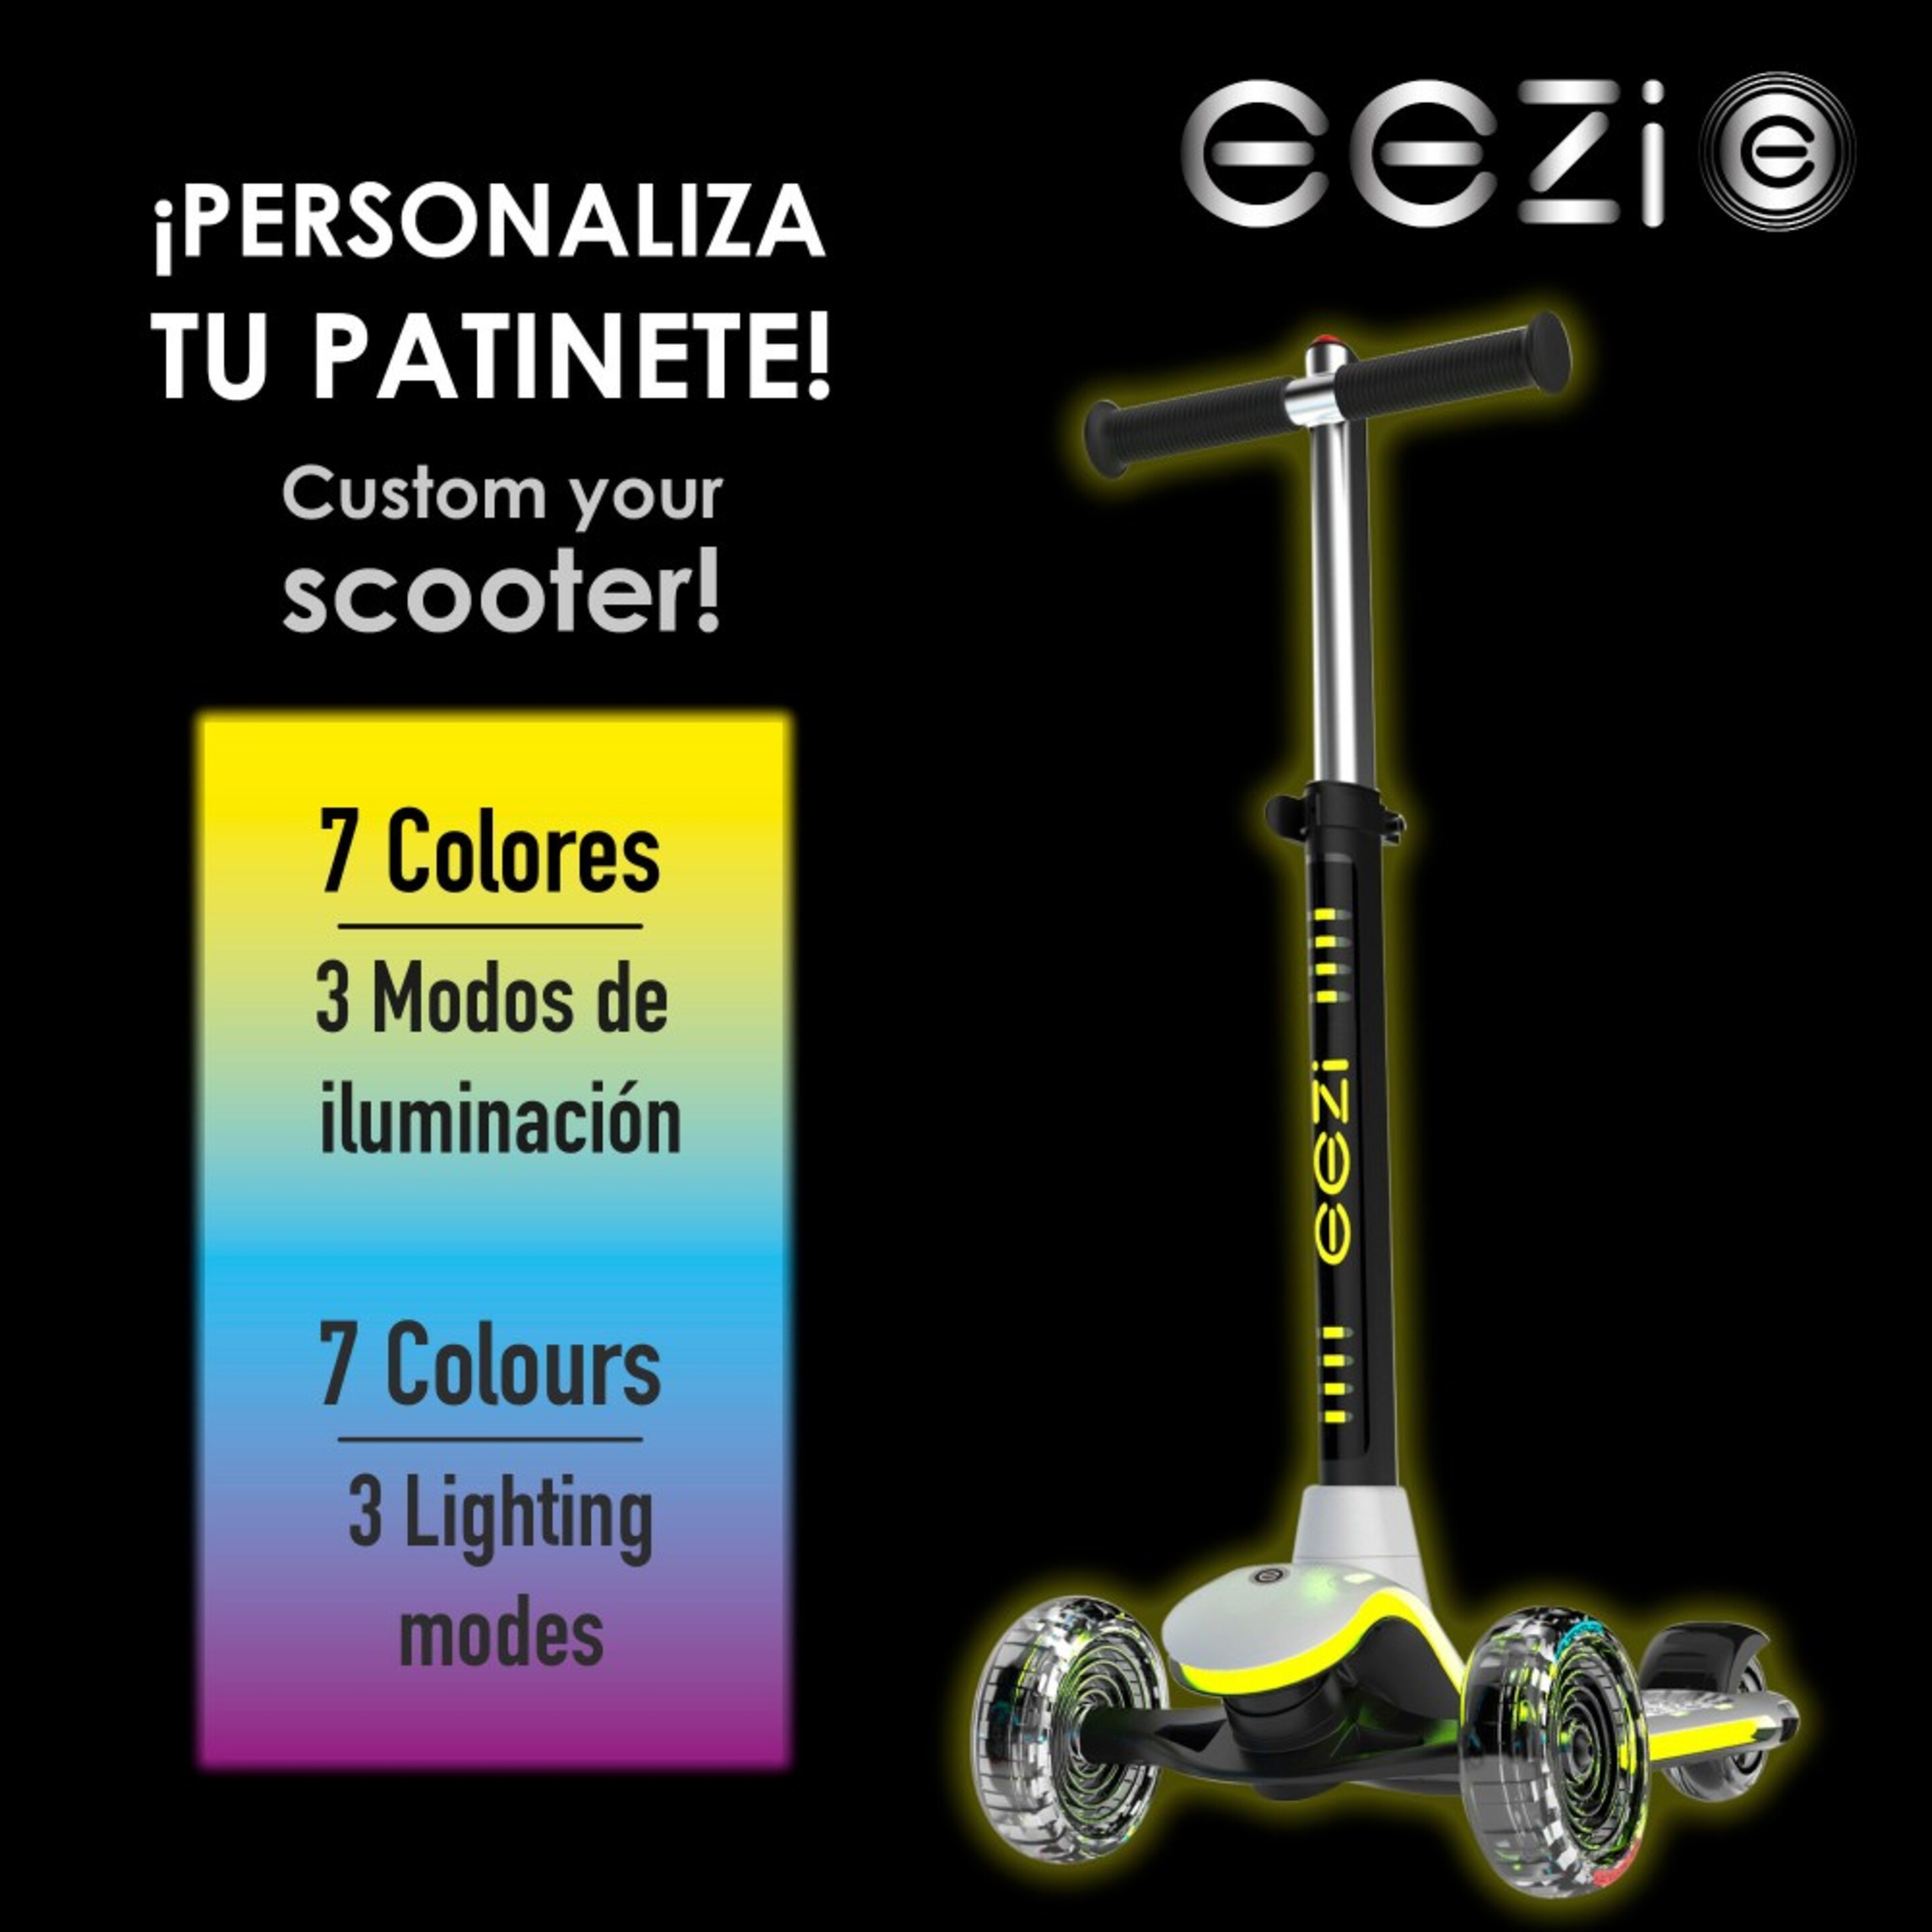 Patinete 3 Ruedas Con Luces Multicolor Personalizables Eezi - Blanco  MKP